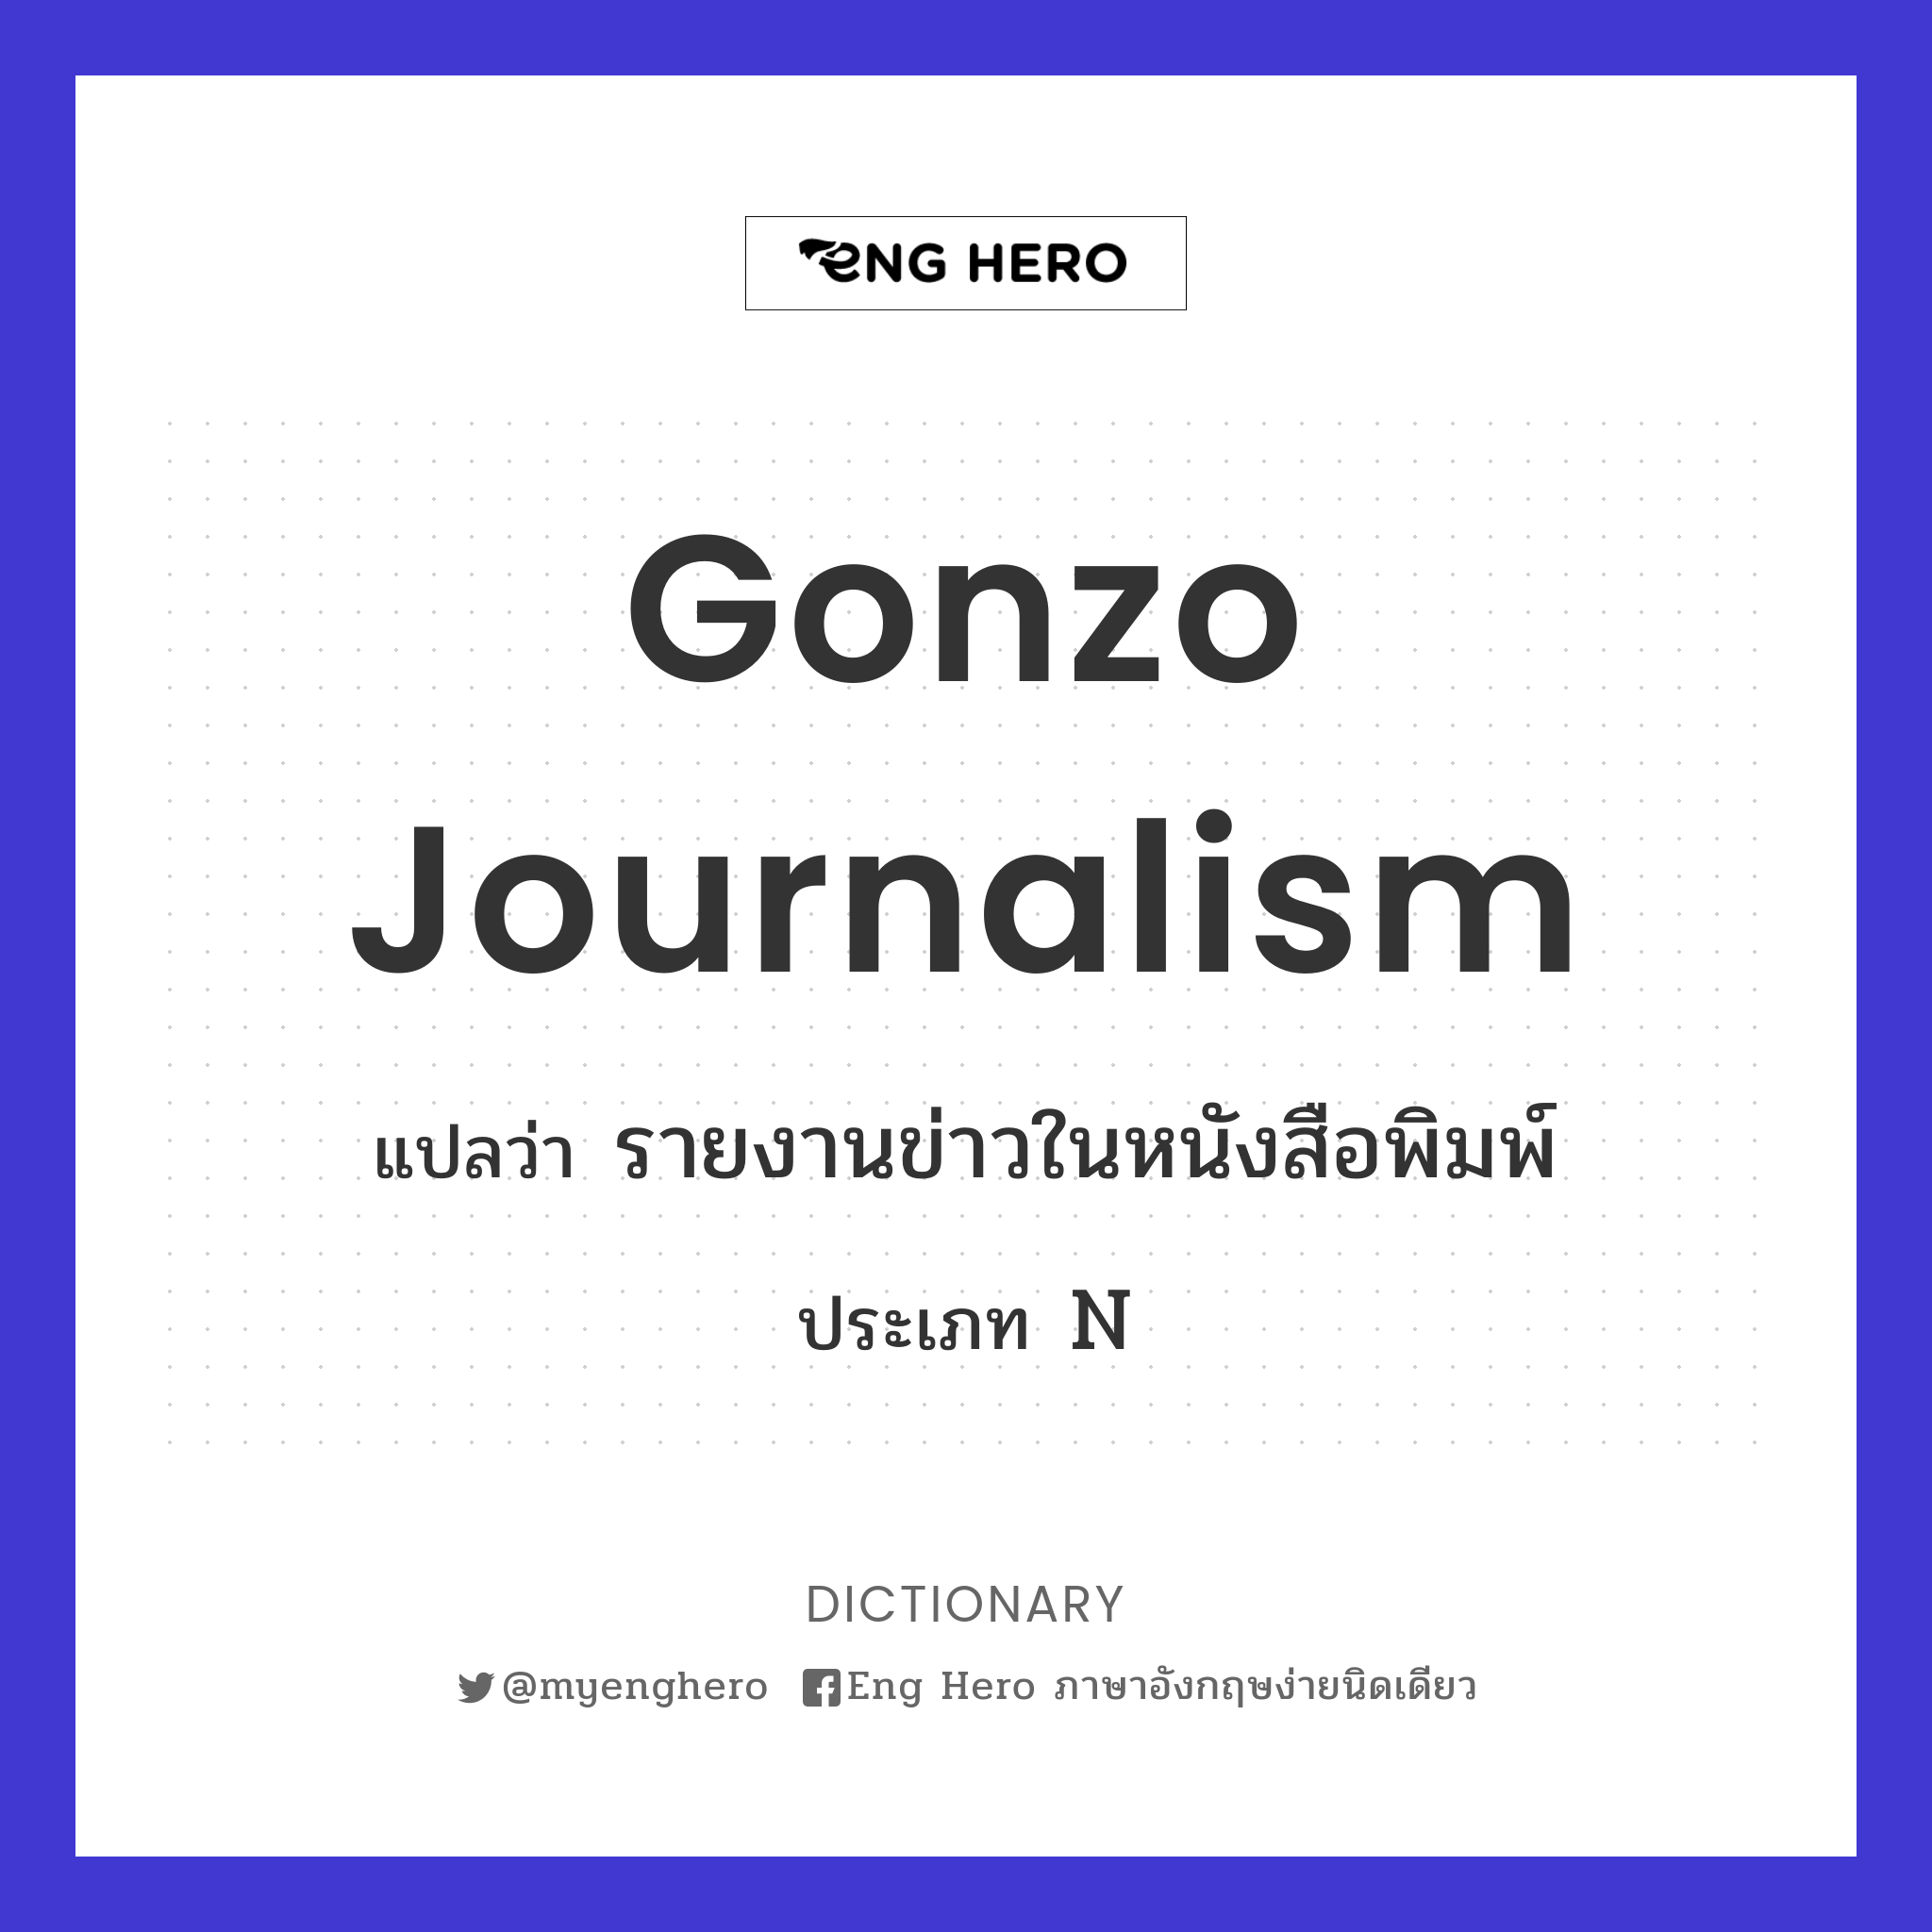 gonzo journalism